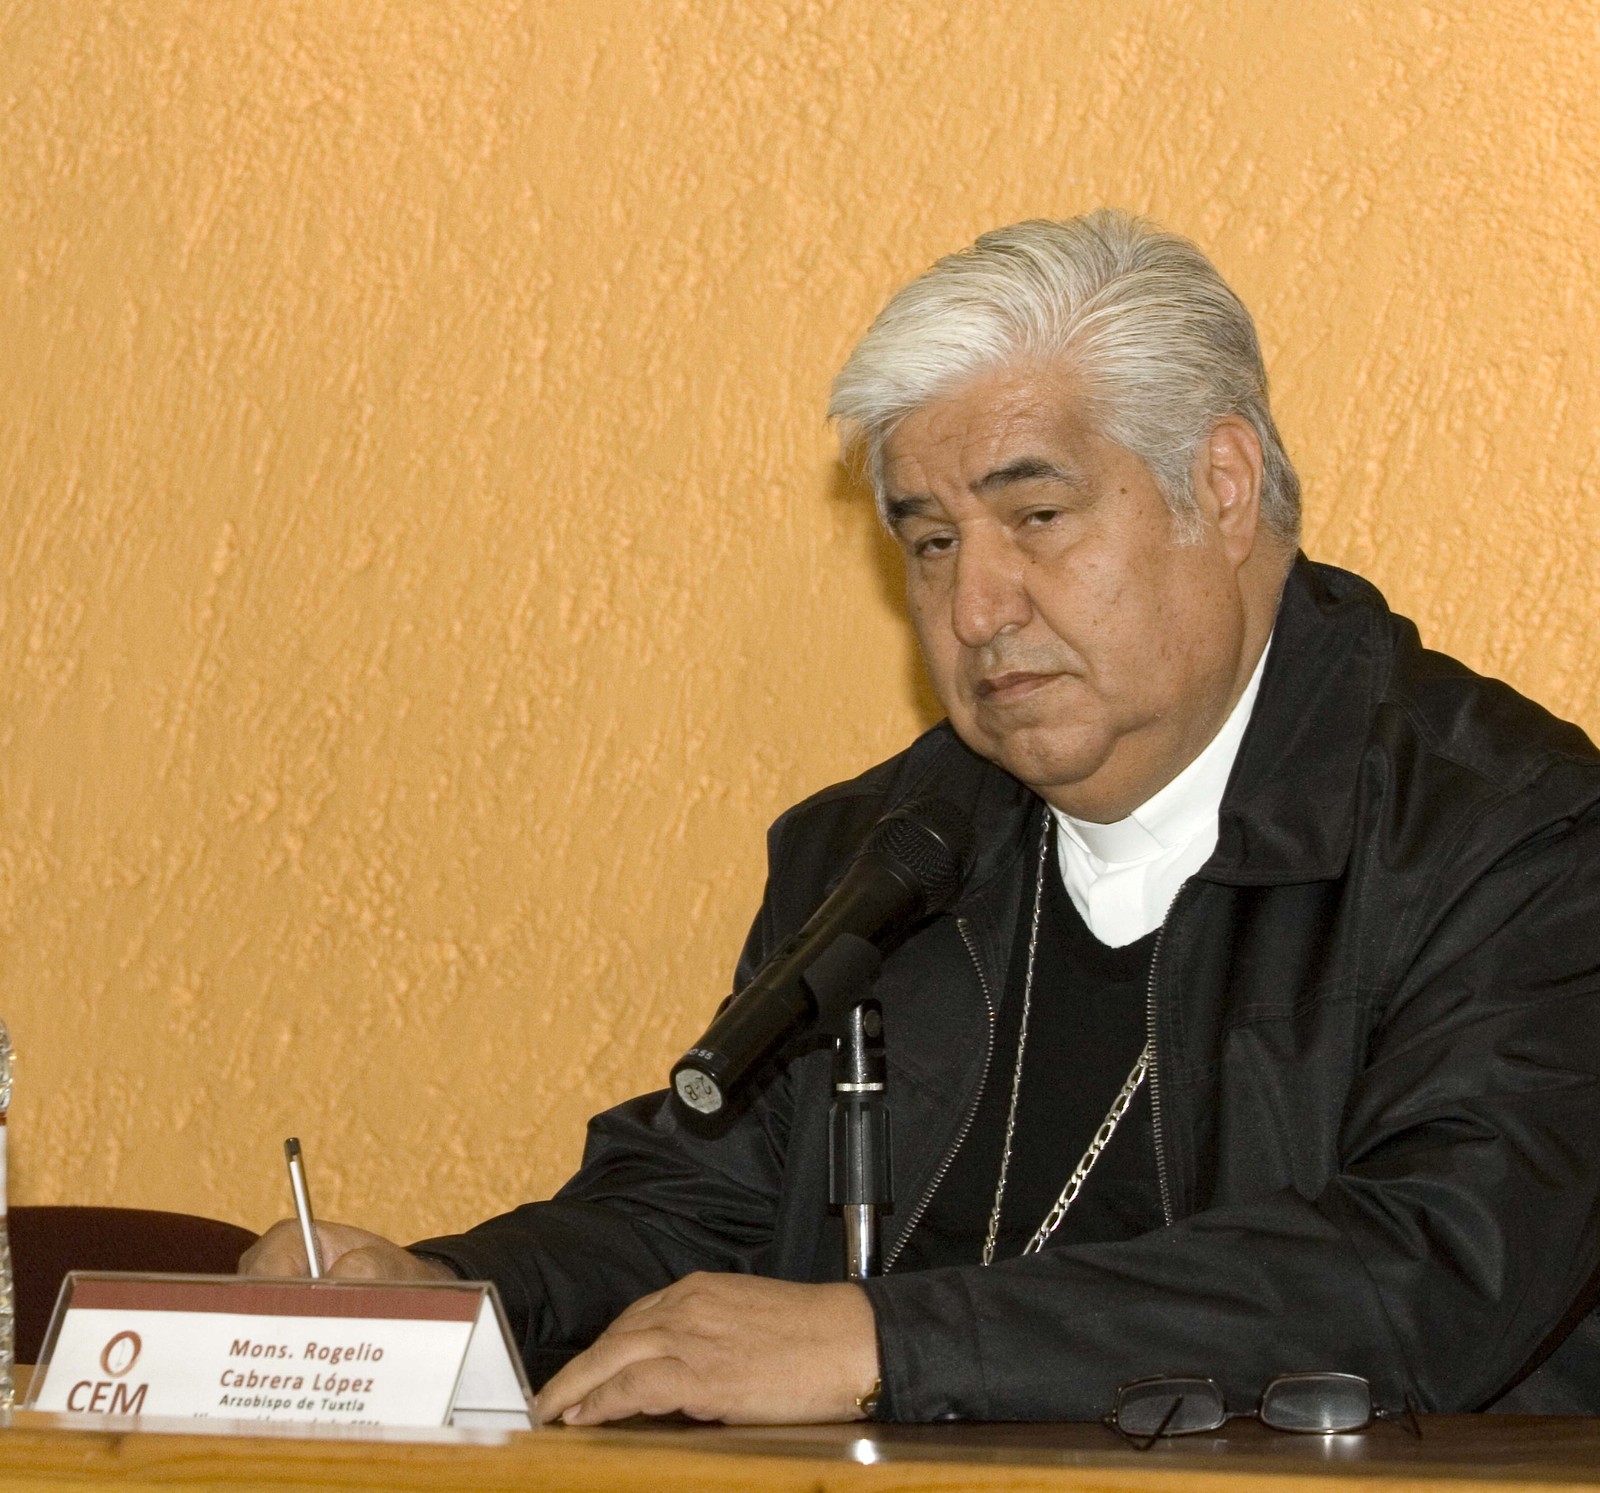 La Iglesia debe castigar con firmeza cualquier delito y escuchar a las víctimas, afirmó Rogelio Cabrera López, presidente del CEM.